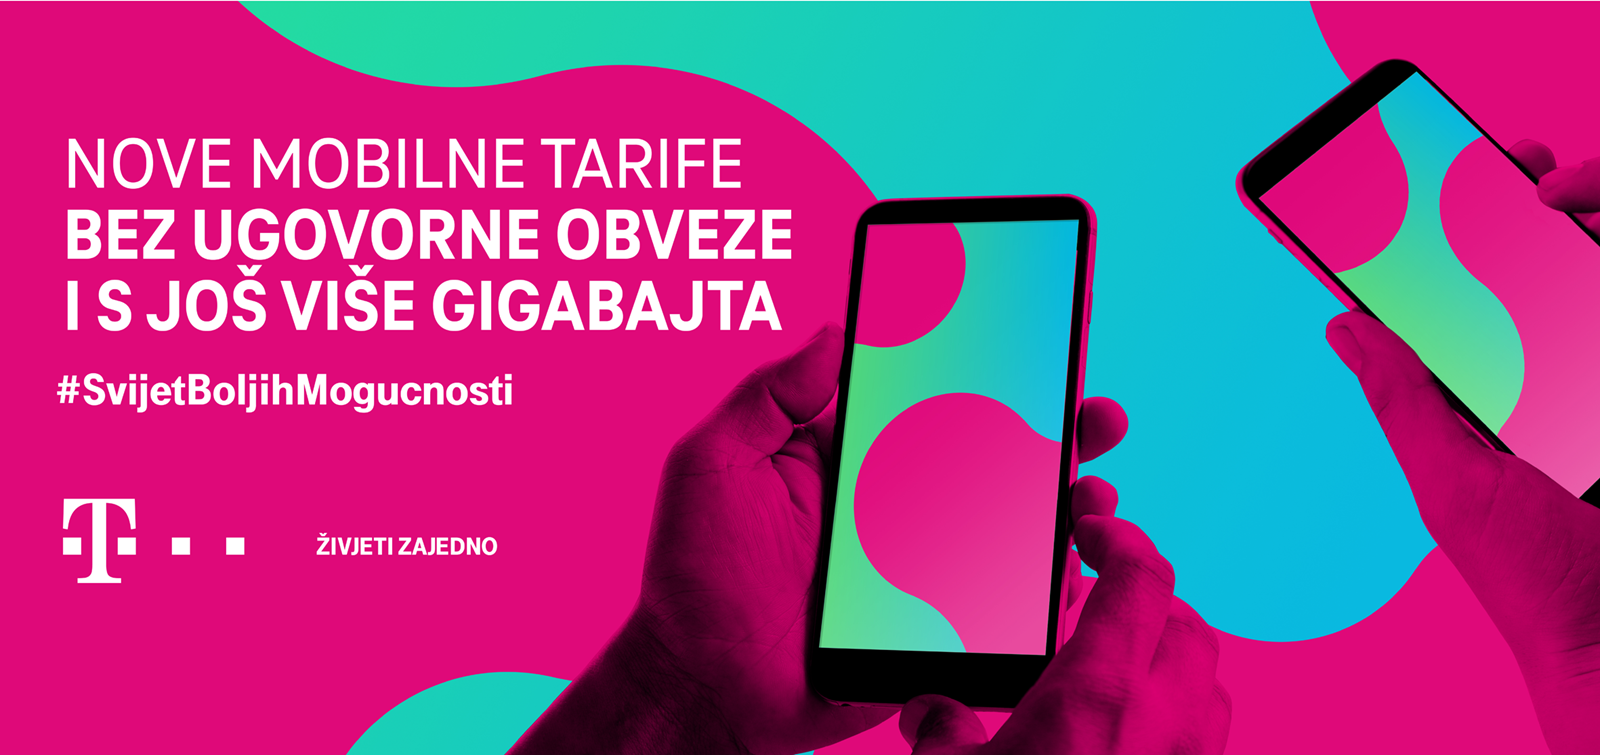 Nove pretplatničke tarife bez ugovorne obveze - Telekomi @ Bug.hr